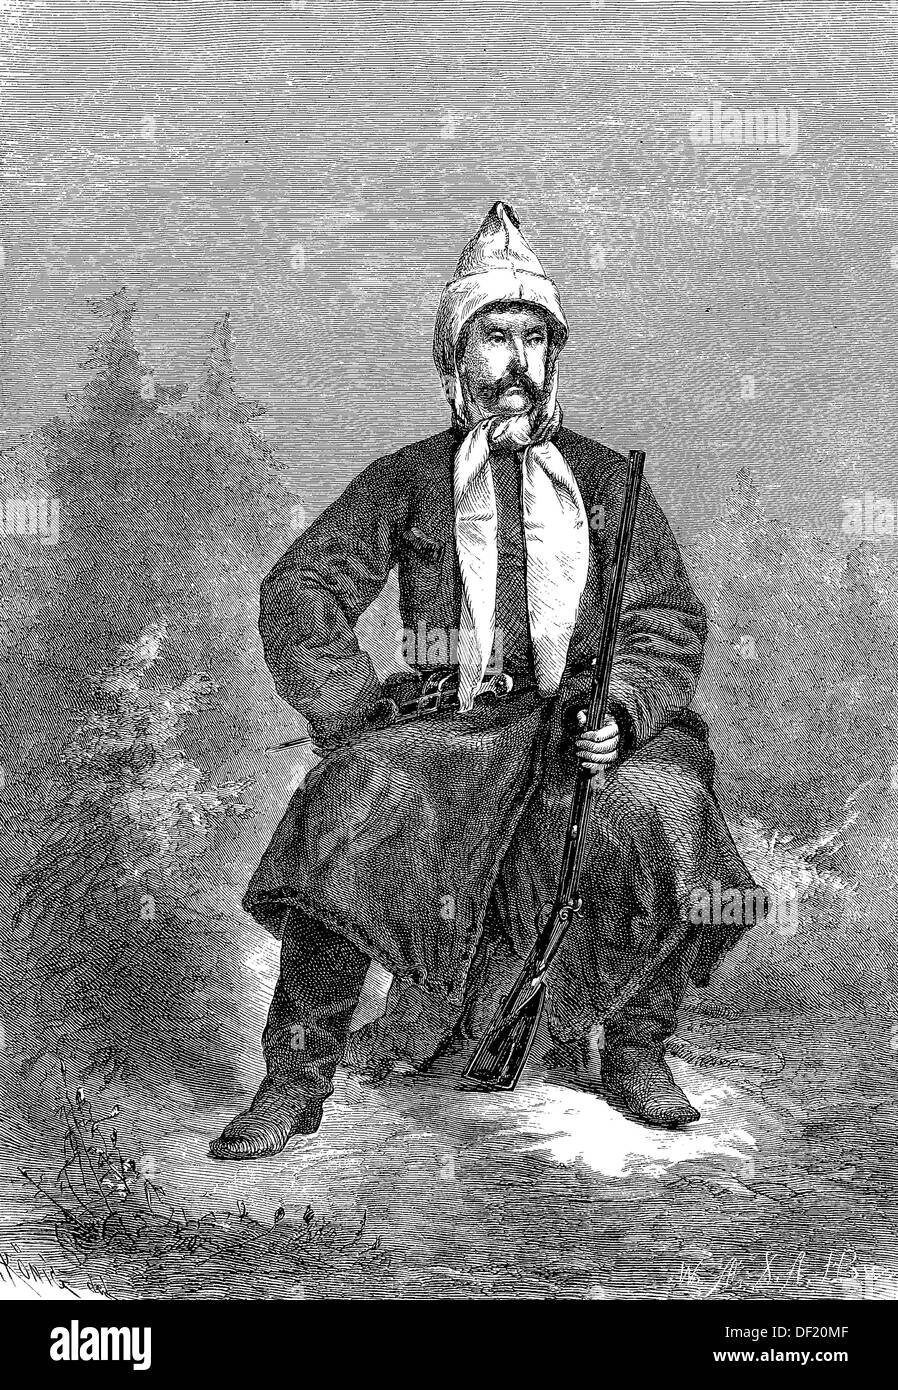 En costume de chasse Prince Suwarow, Alexandre Vassilievitch Souvorov Rymnikski, 1730-1800, un célèbre généralissime russe et est sti Banque D'Images